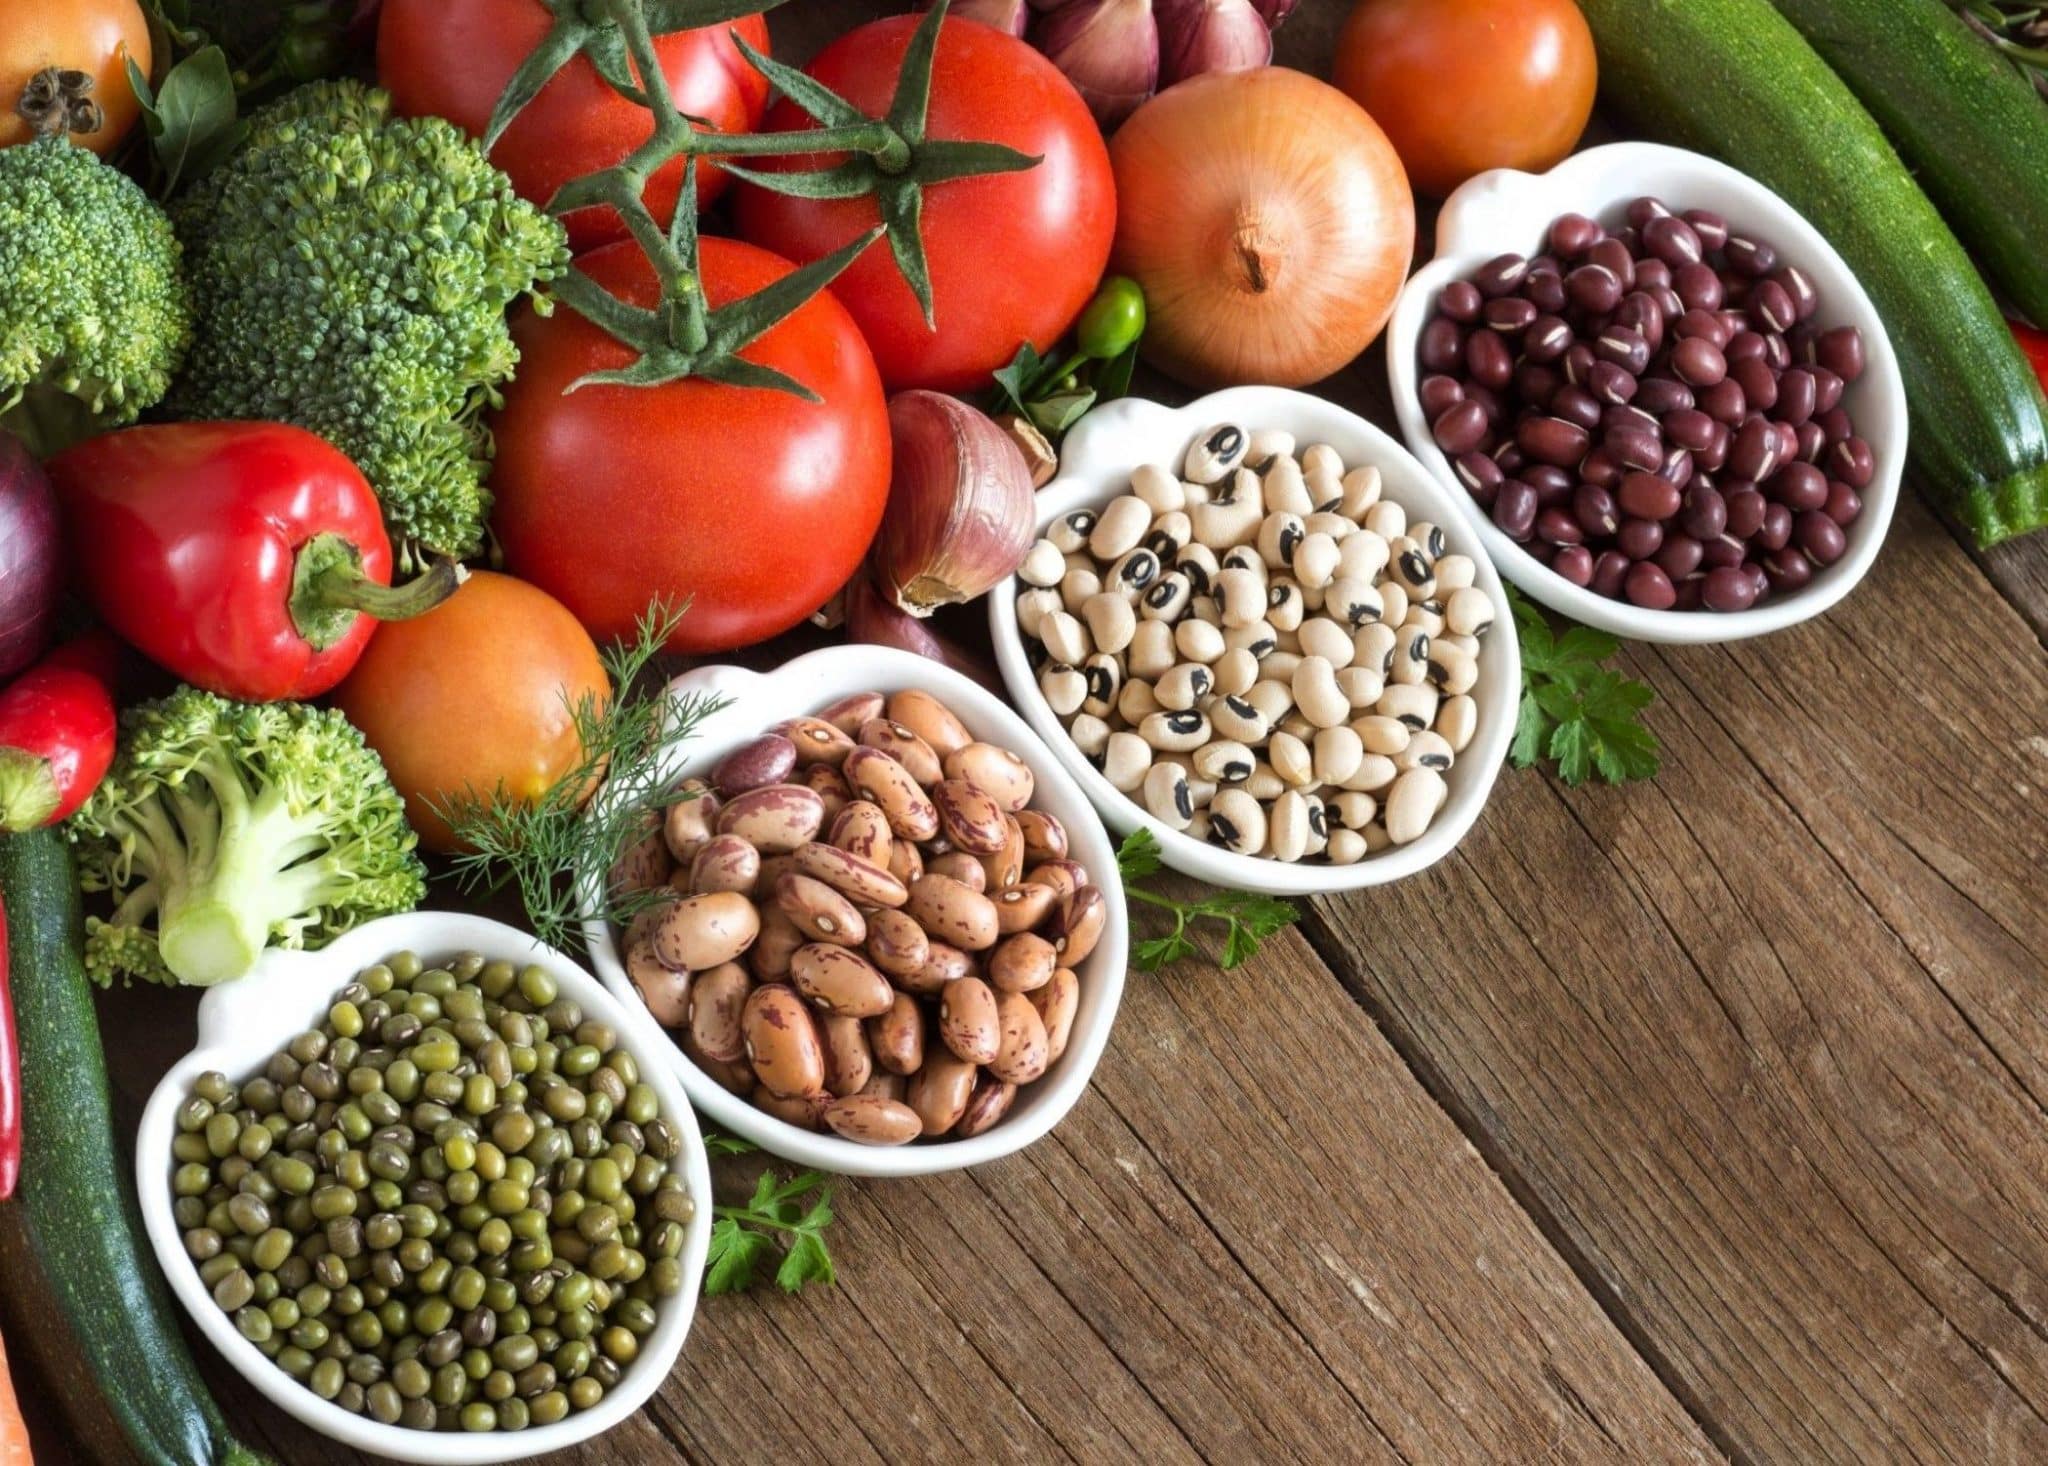 תזונה צמחית מתבססת על דגנים, ירקות ופירות, קטניות וזרעים, אגוזים, מוצרי חלב וביצים